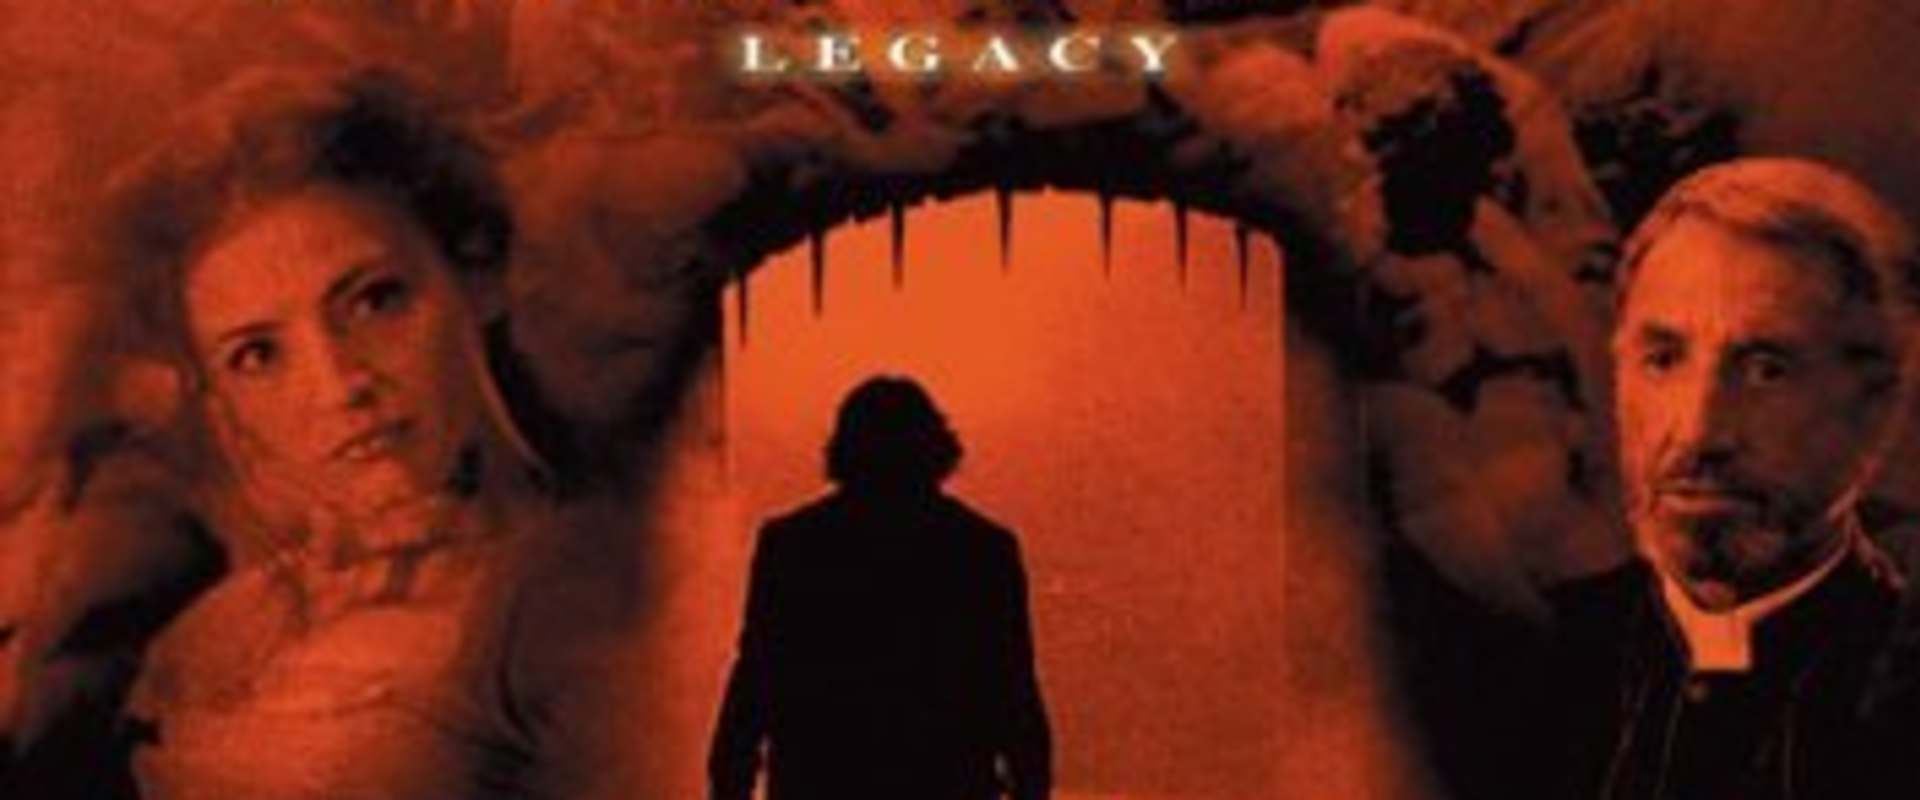 Dracula III: Legacy background 1